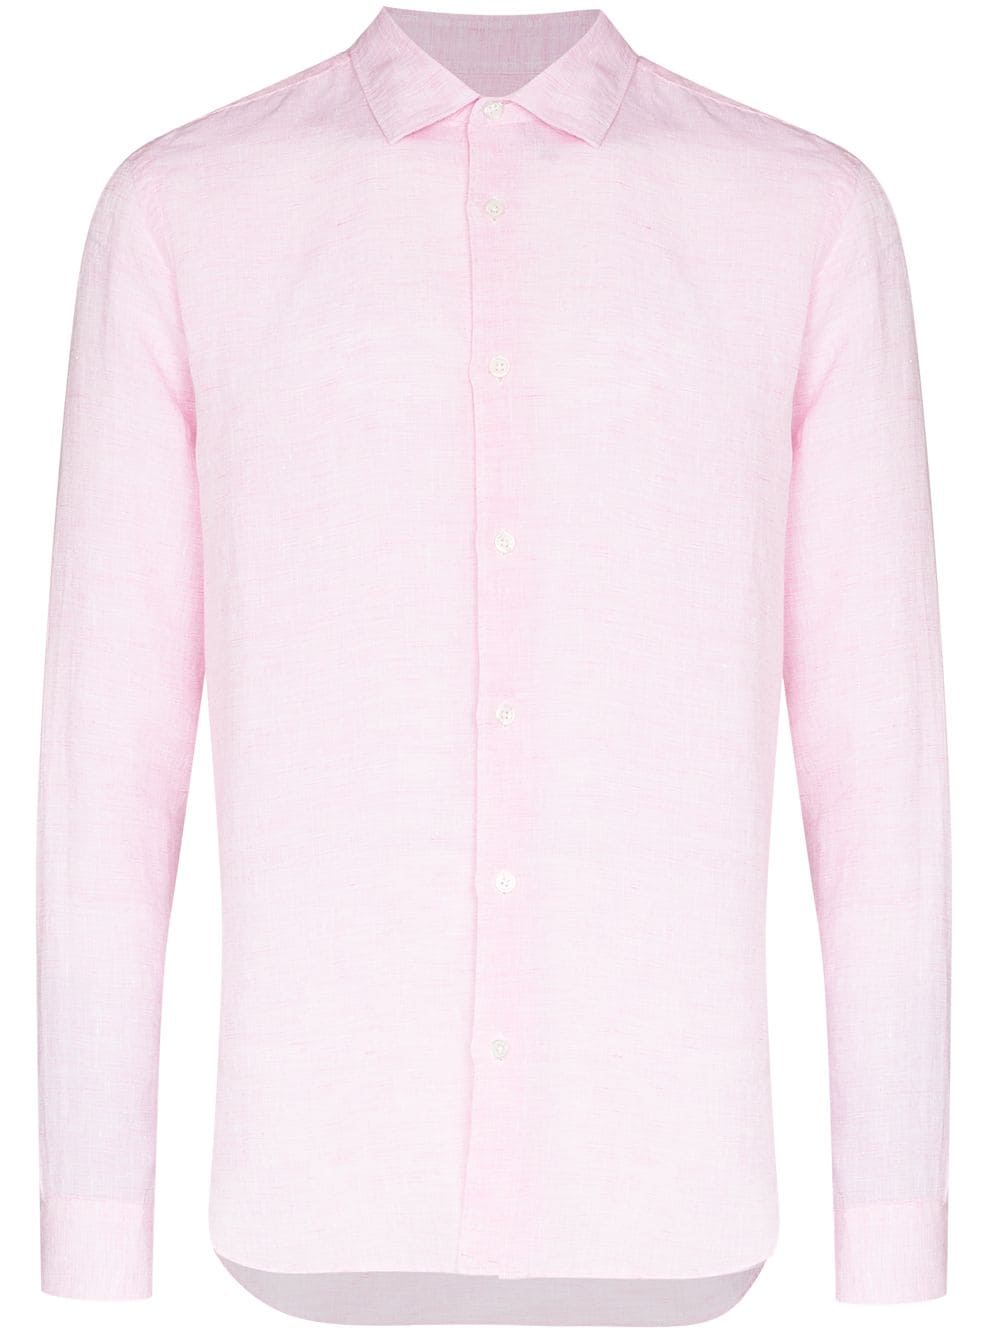 Orlebar Brown Giles Linen Shirt - Farfetch